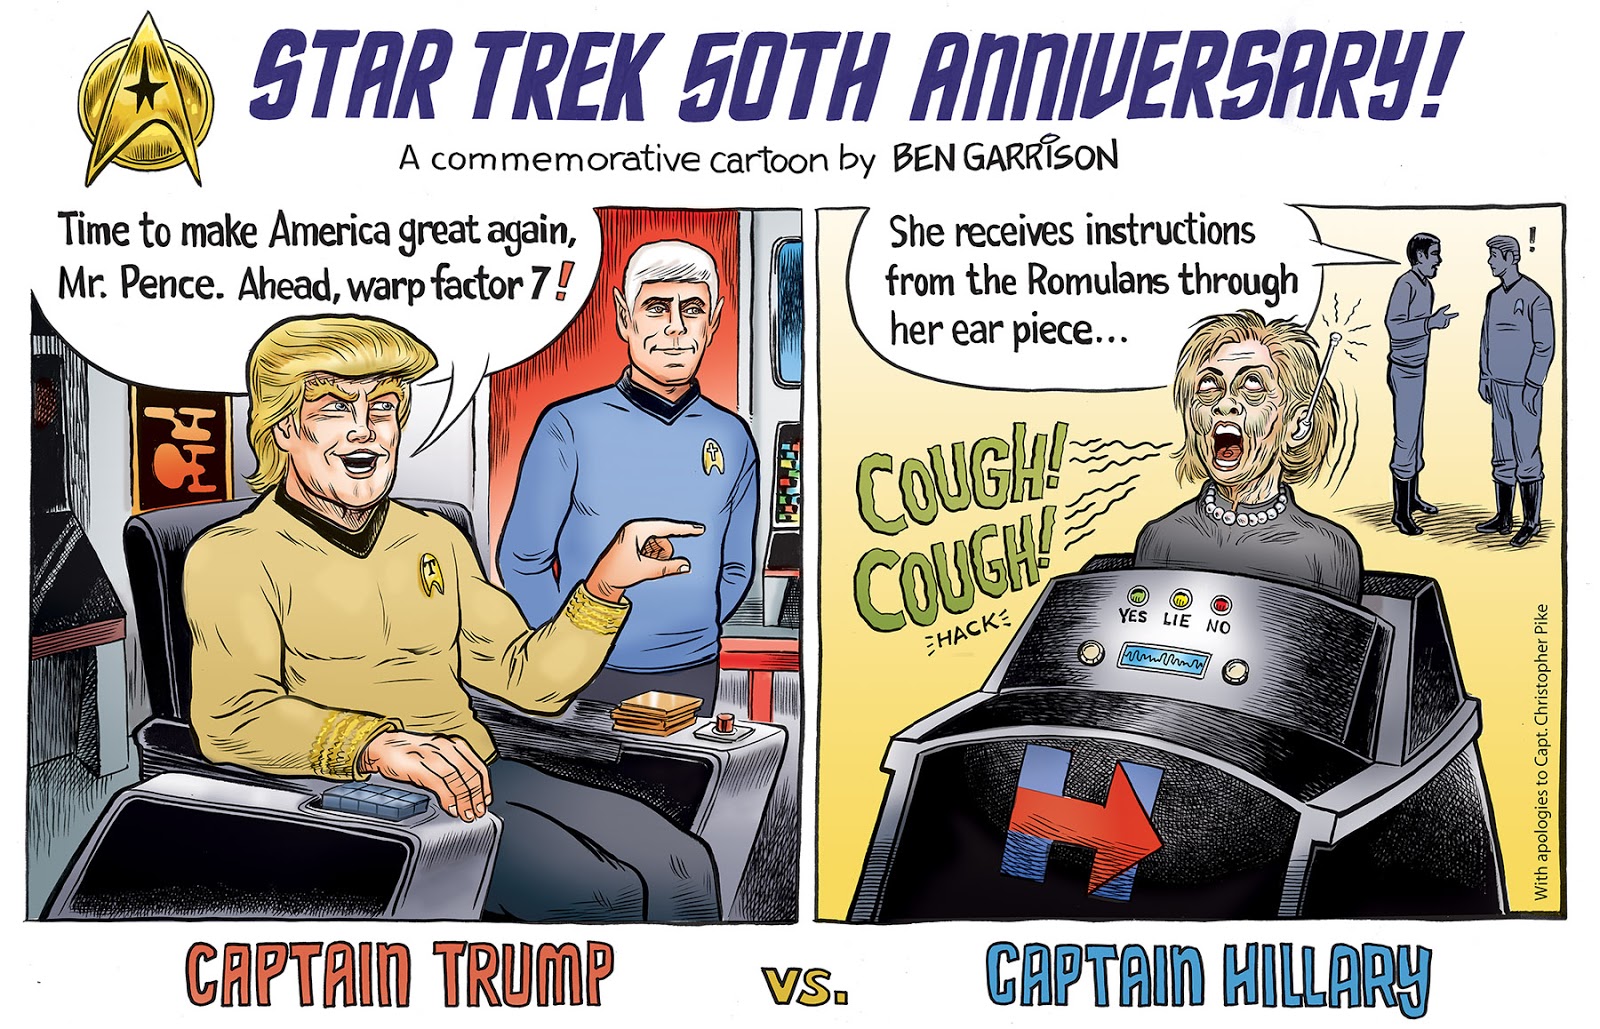 Rogue Cartoonist: Star Trek 50th Anniversary Cartoon: